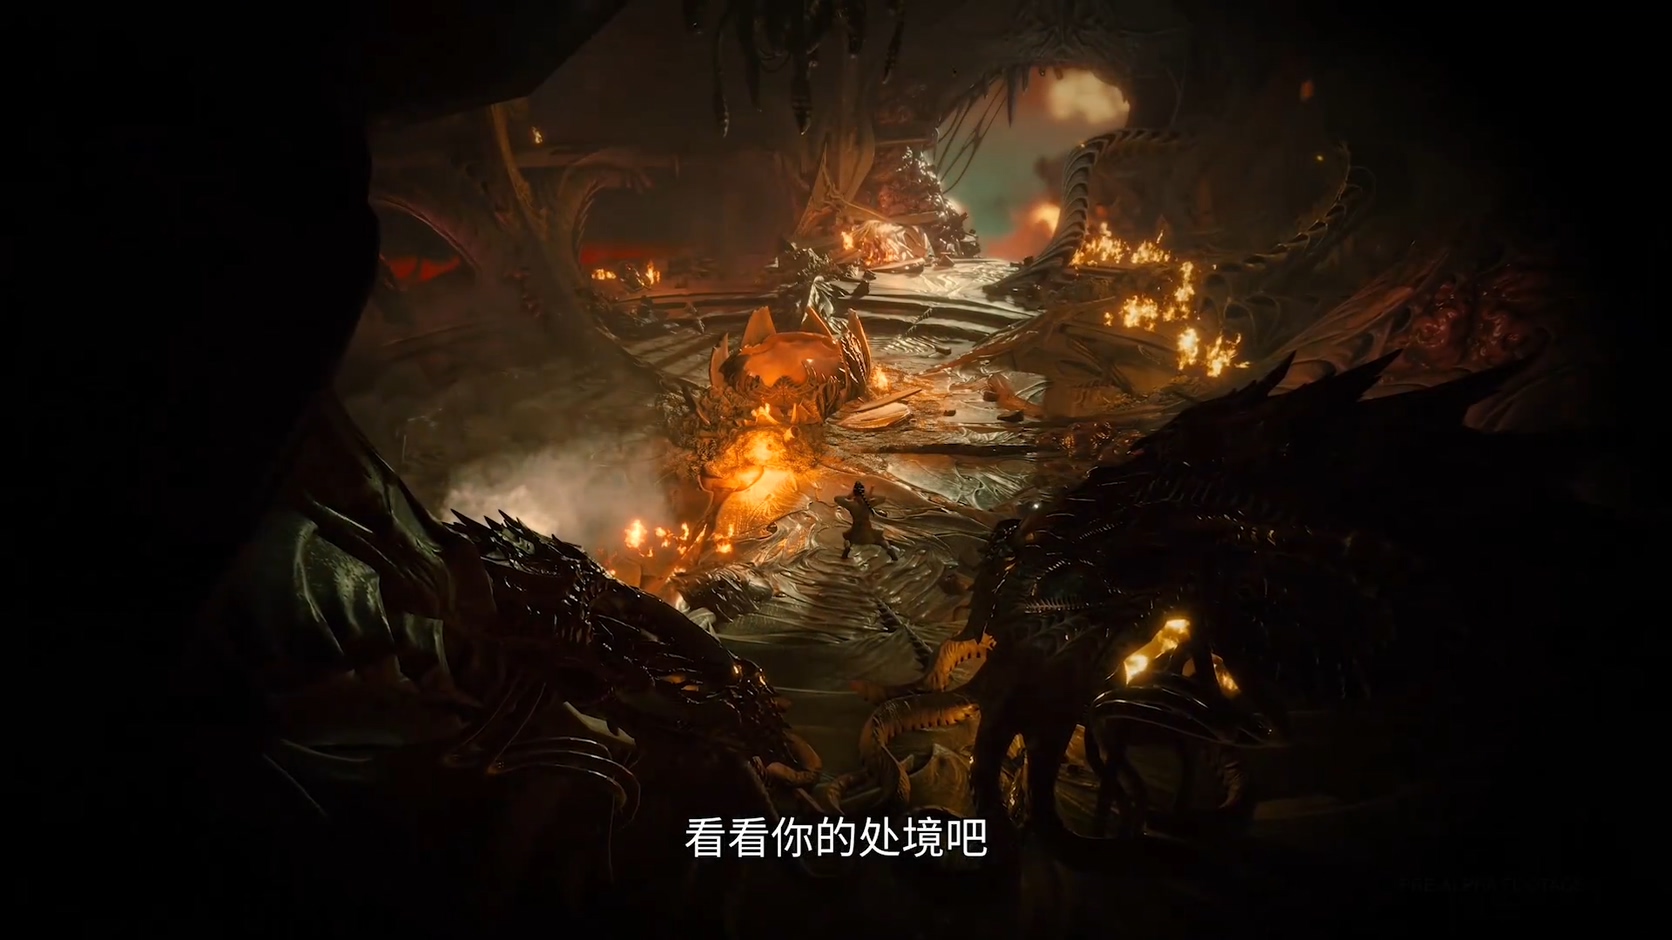 《博德之门3》26分钟实机演示公开 中文字幕